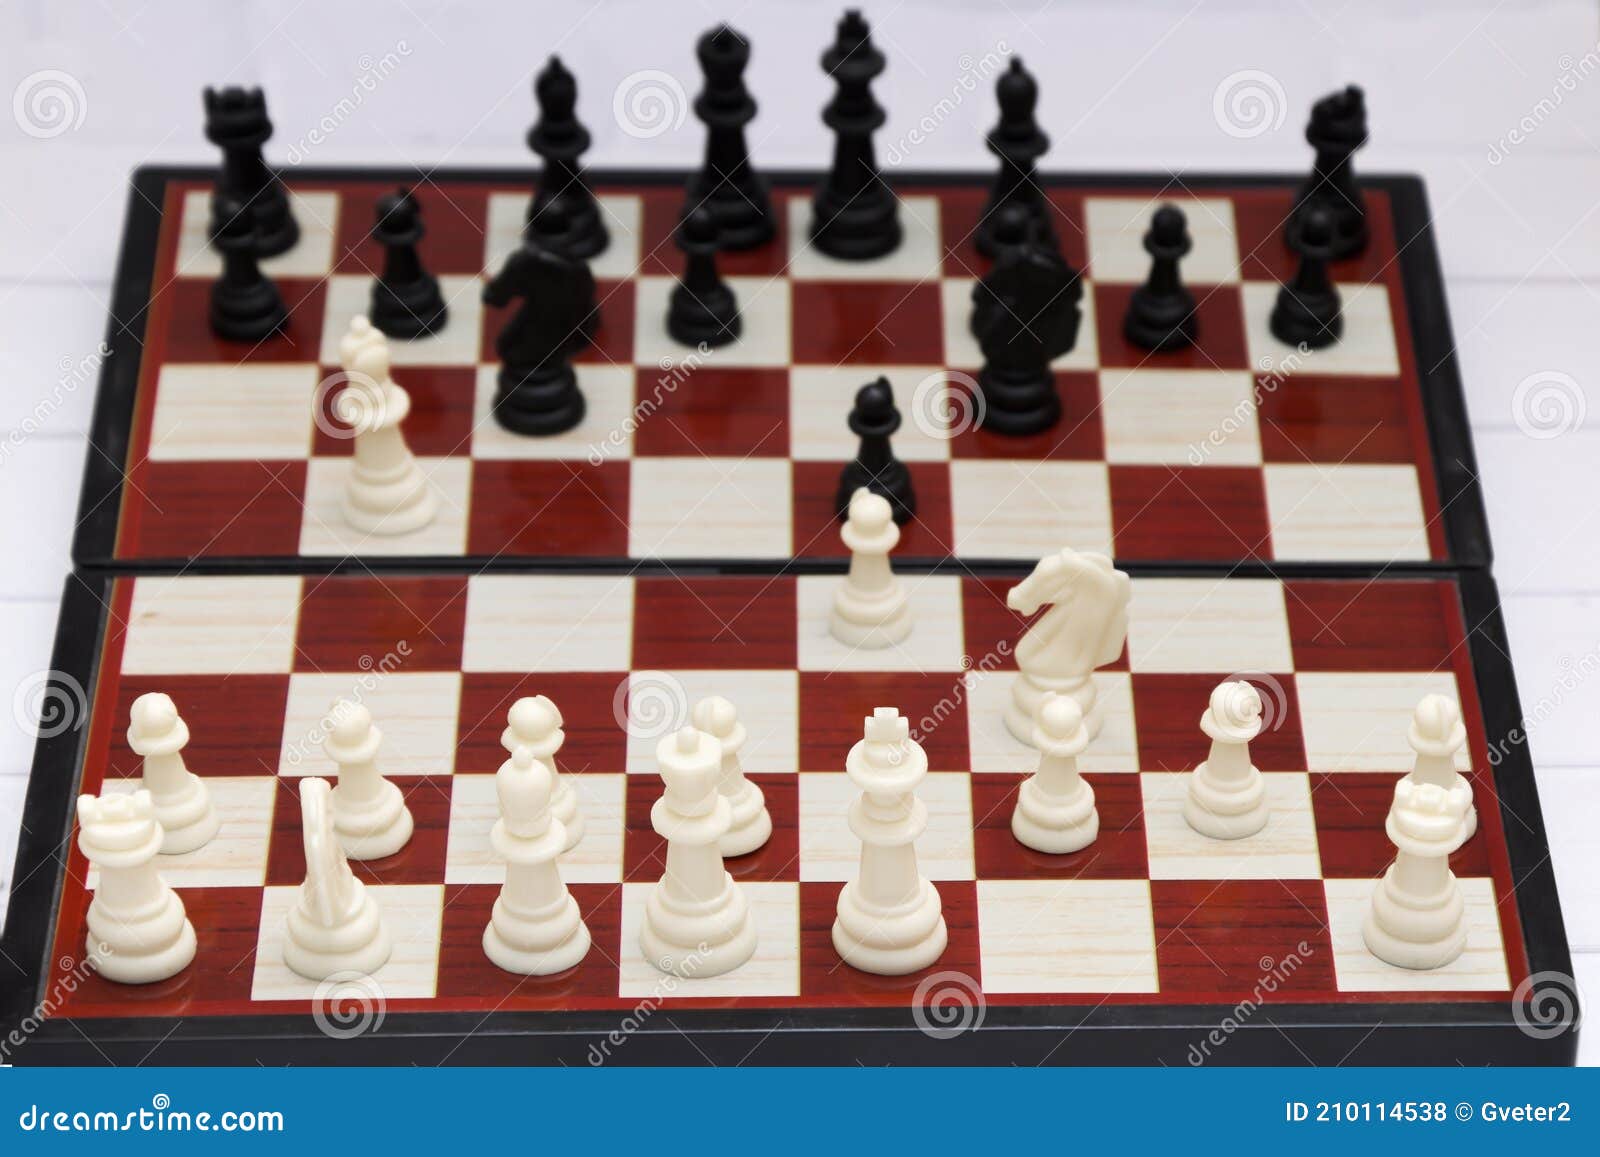 Defesas Famosas no Xadrez - Como se Defender no Início